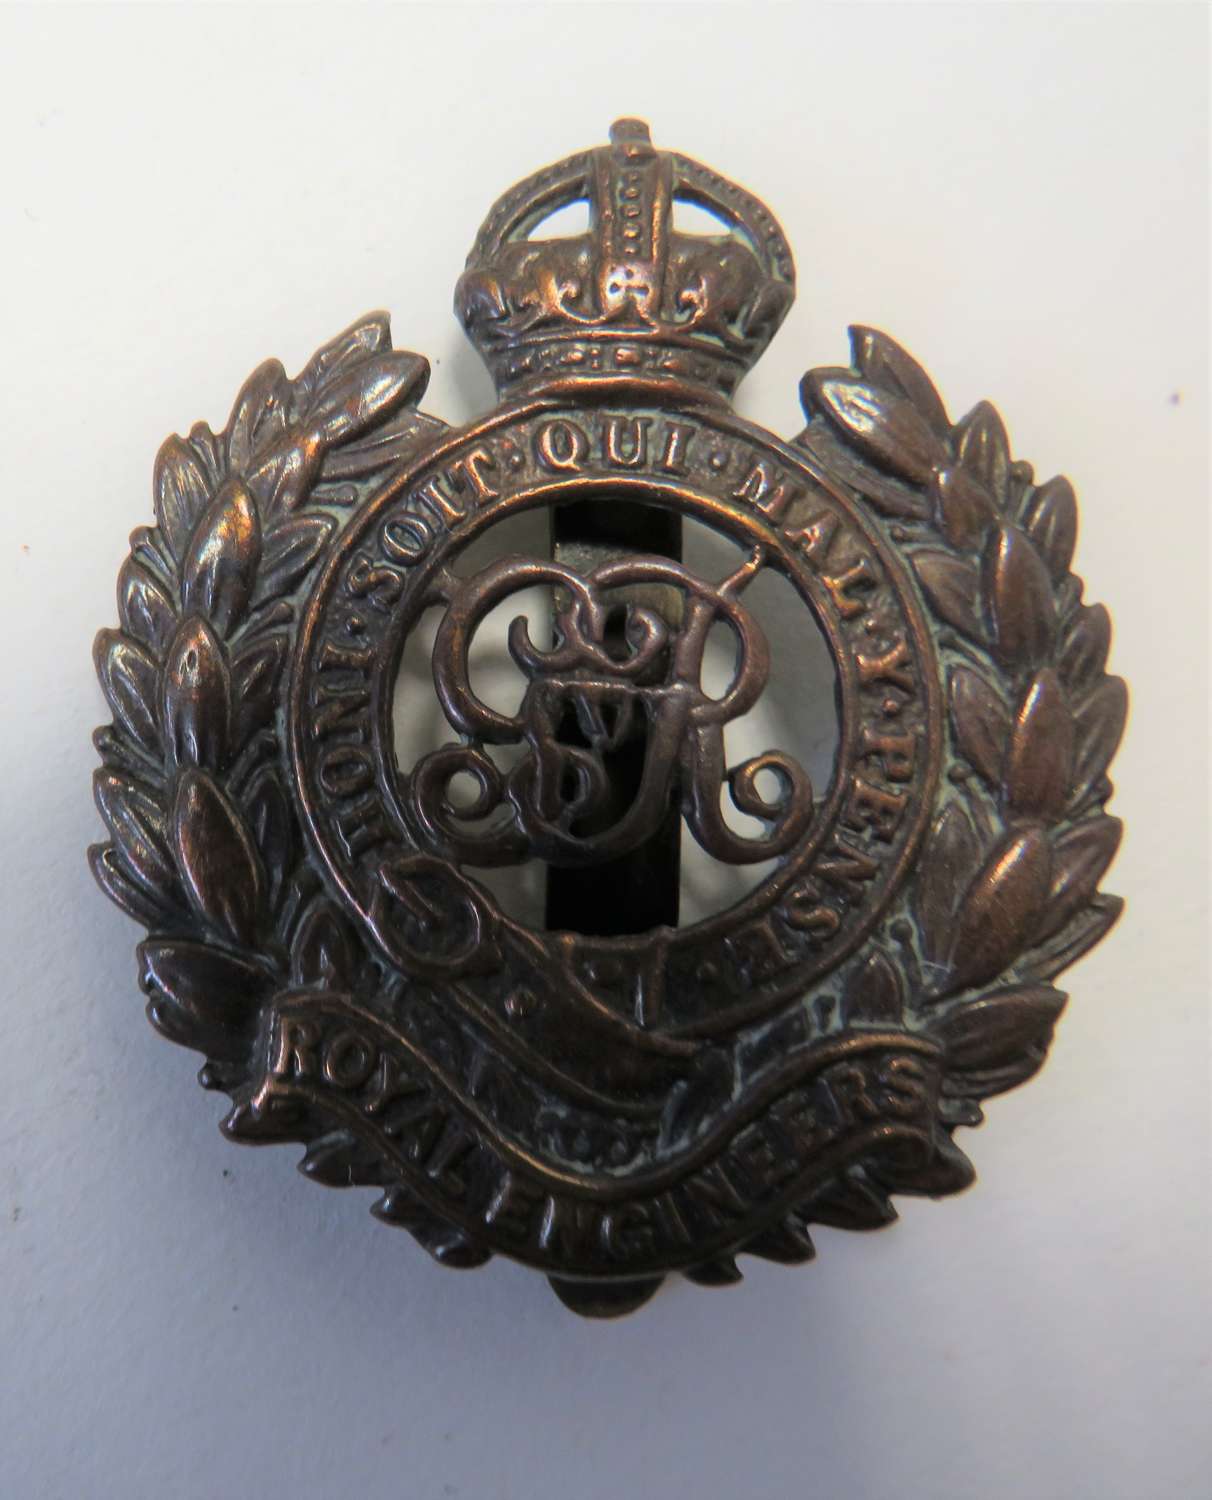 WW1 Royal Engineers Cap Badge